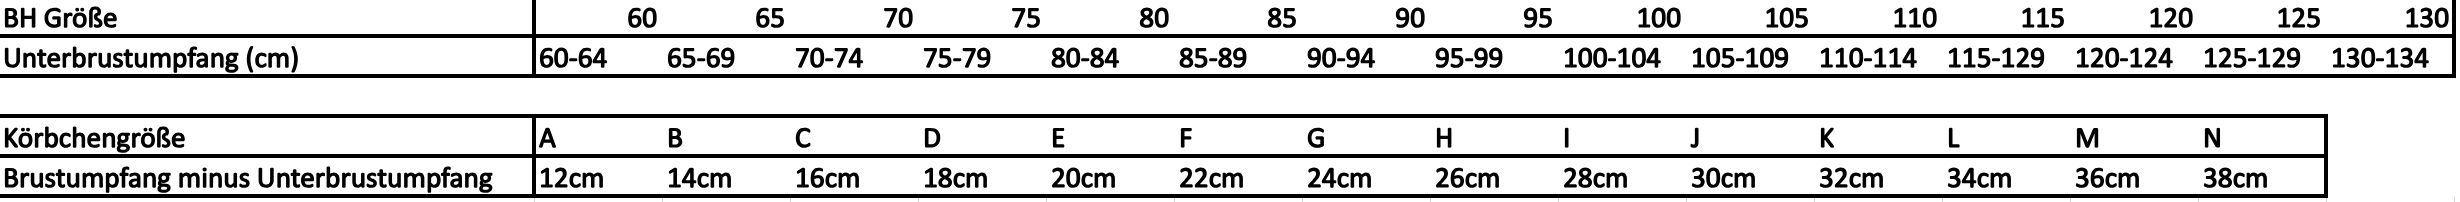 BH-Größen-Tabelle.